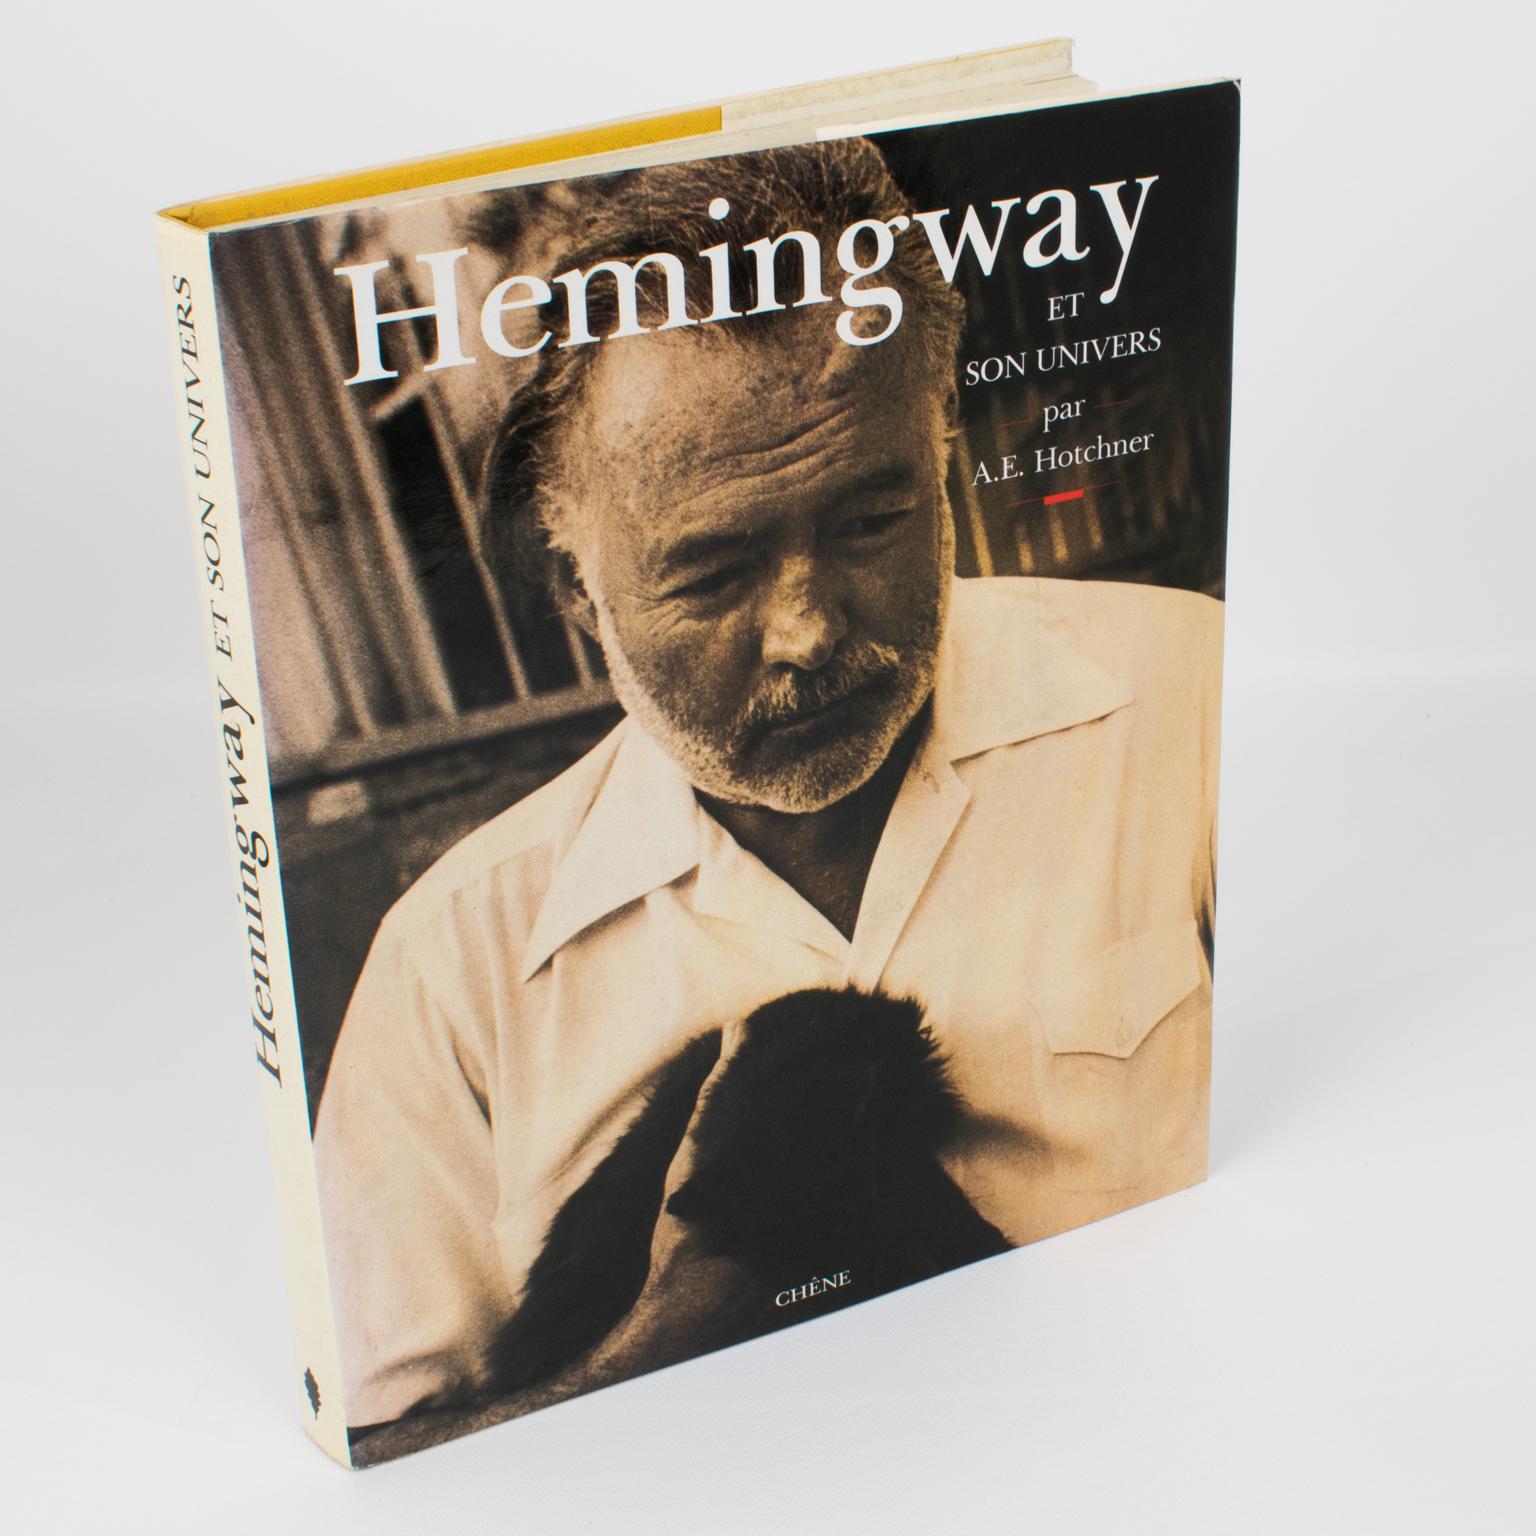 Hemingway et son Univers, livre français de A. E. Hotchner, édition originale, 1990.
Un grand écrivain, une force de la nature et un homme qui a affronté la mort.
Biographie illustrée, composée de souvenirs personnels de l'auteur, un ami proche de